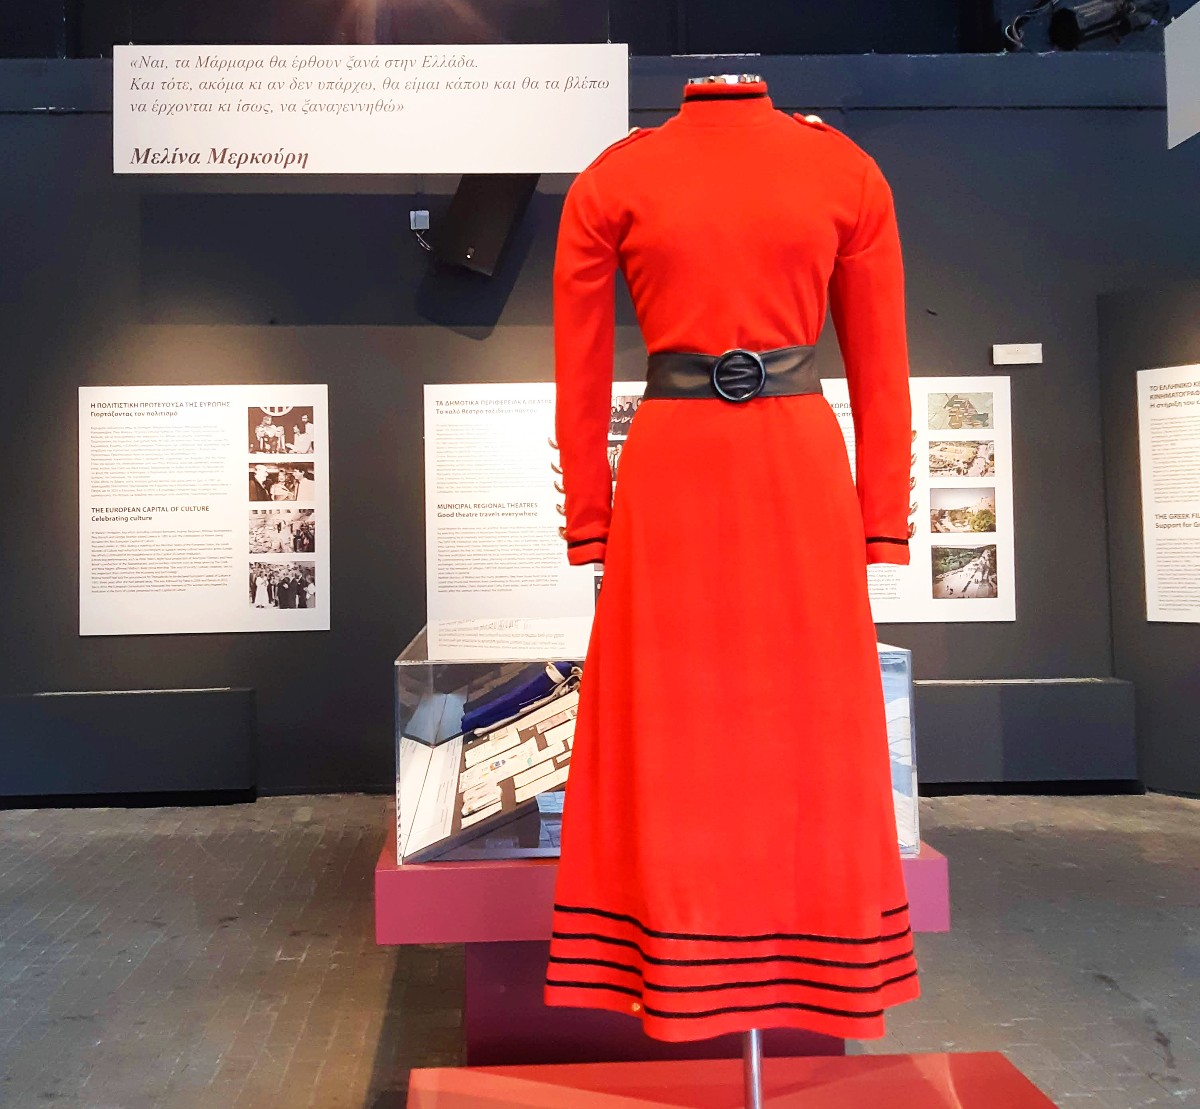 Copy of Melina Mercouri's red dress